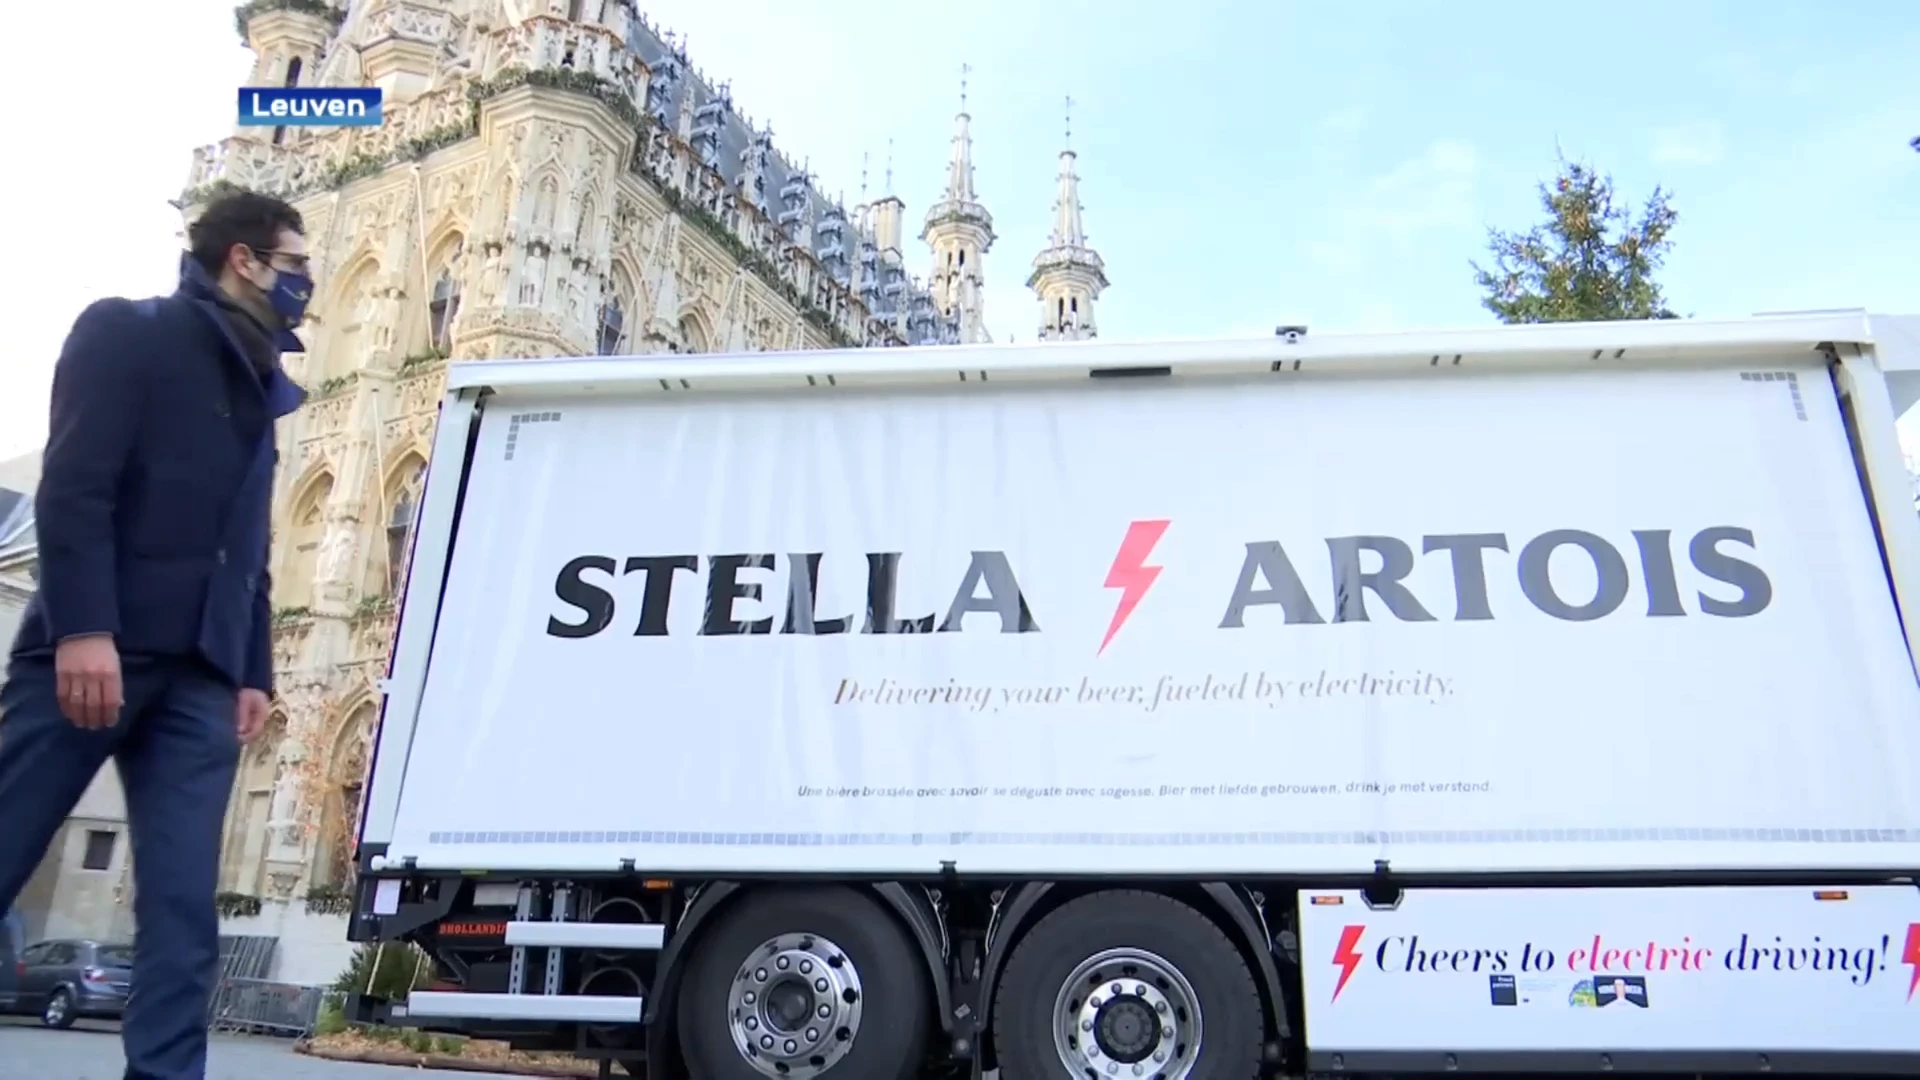 De allereerste elektrische vrachtwagen van ons land? Die is van AB InBev en toert rond in Leuven